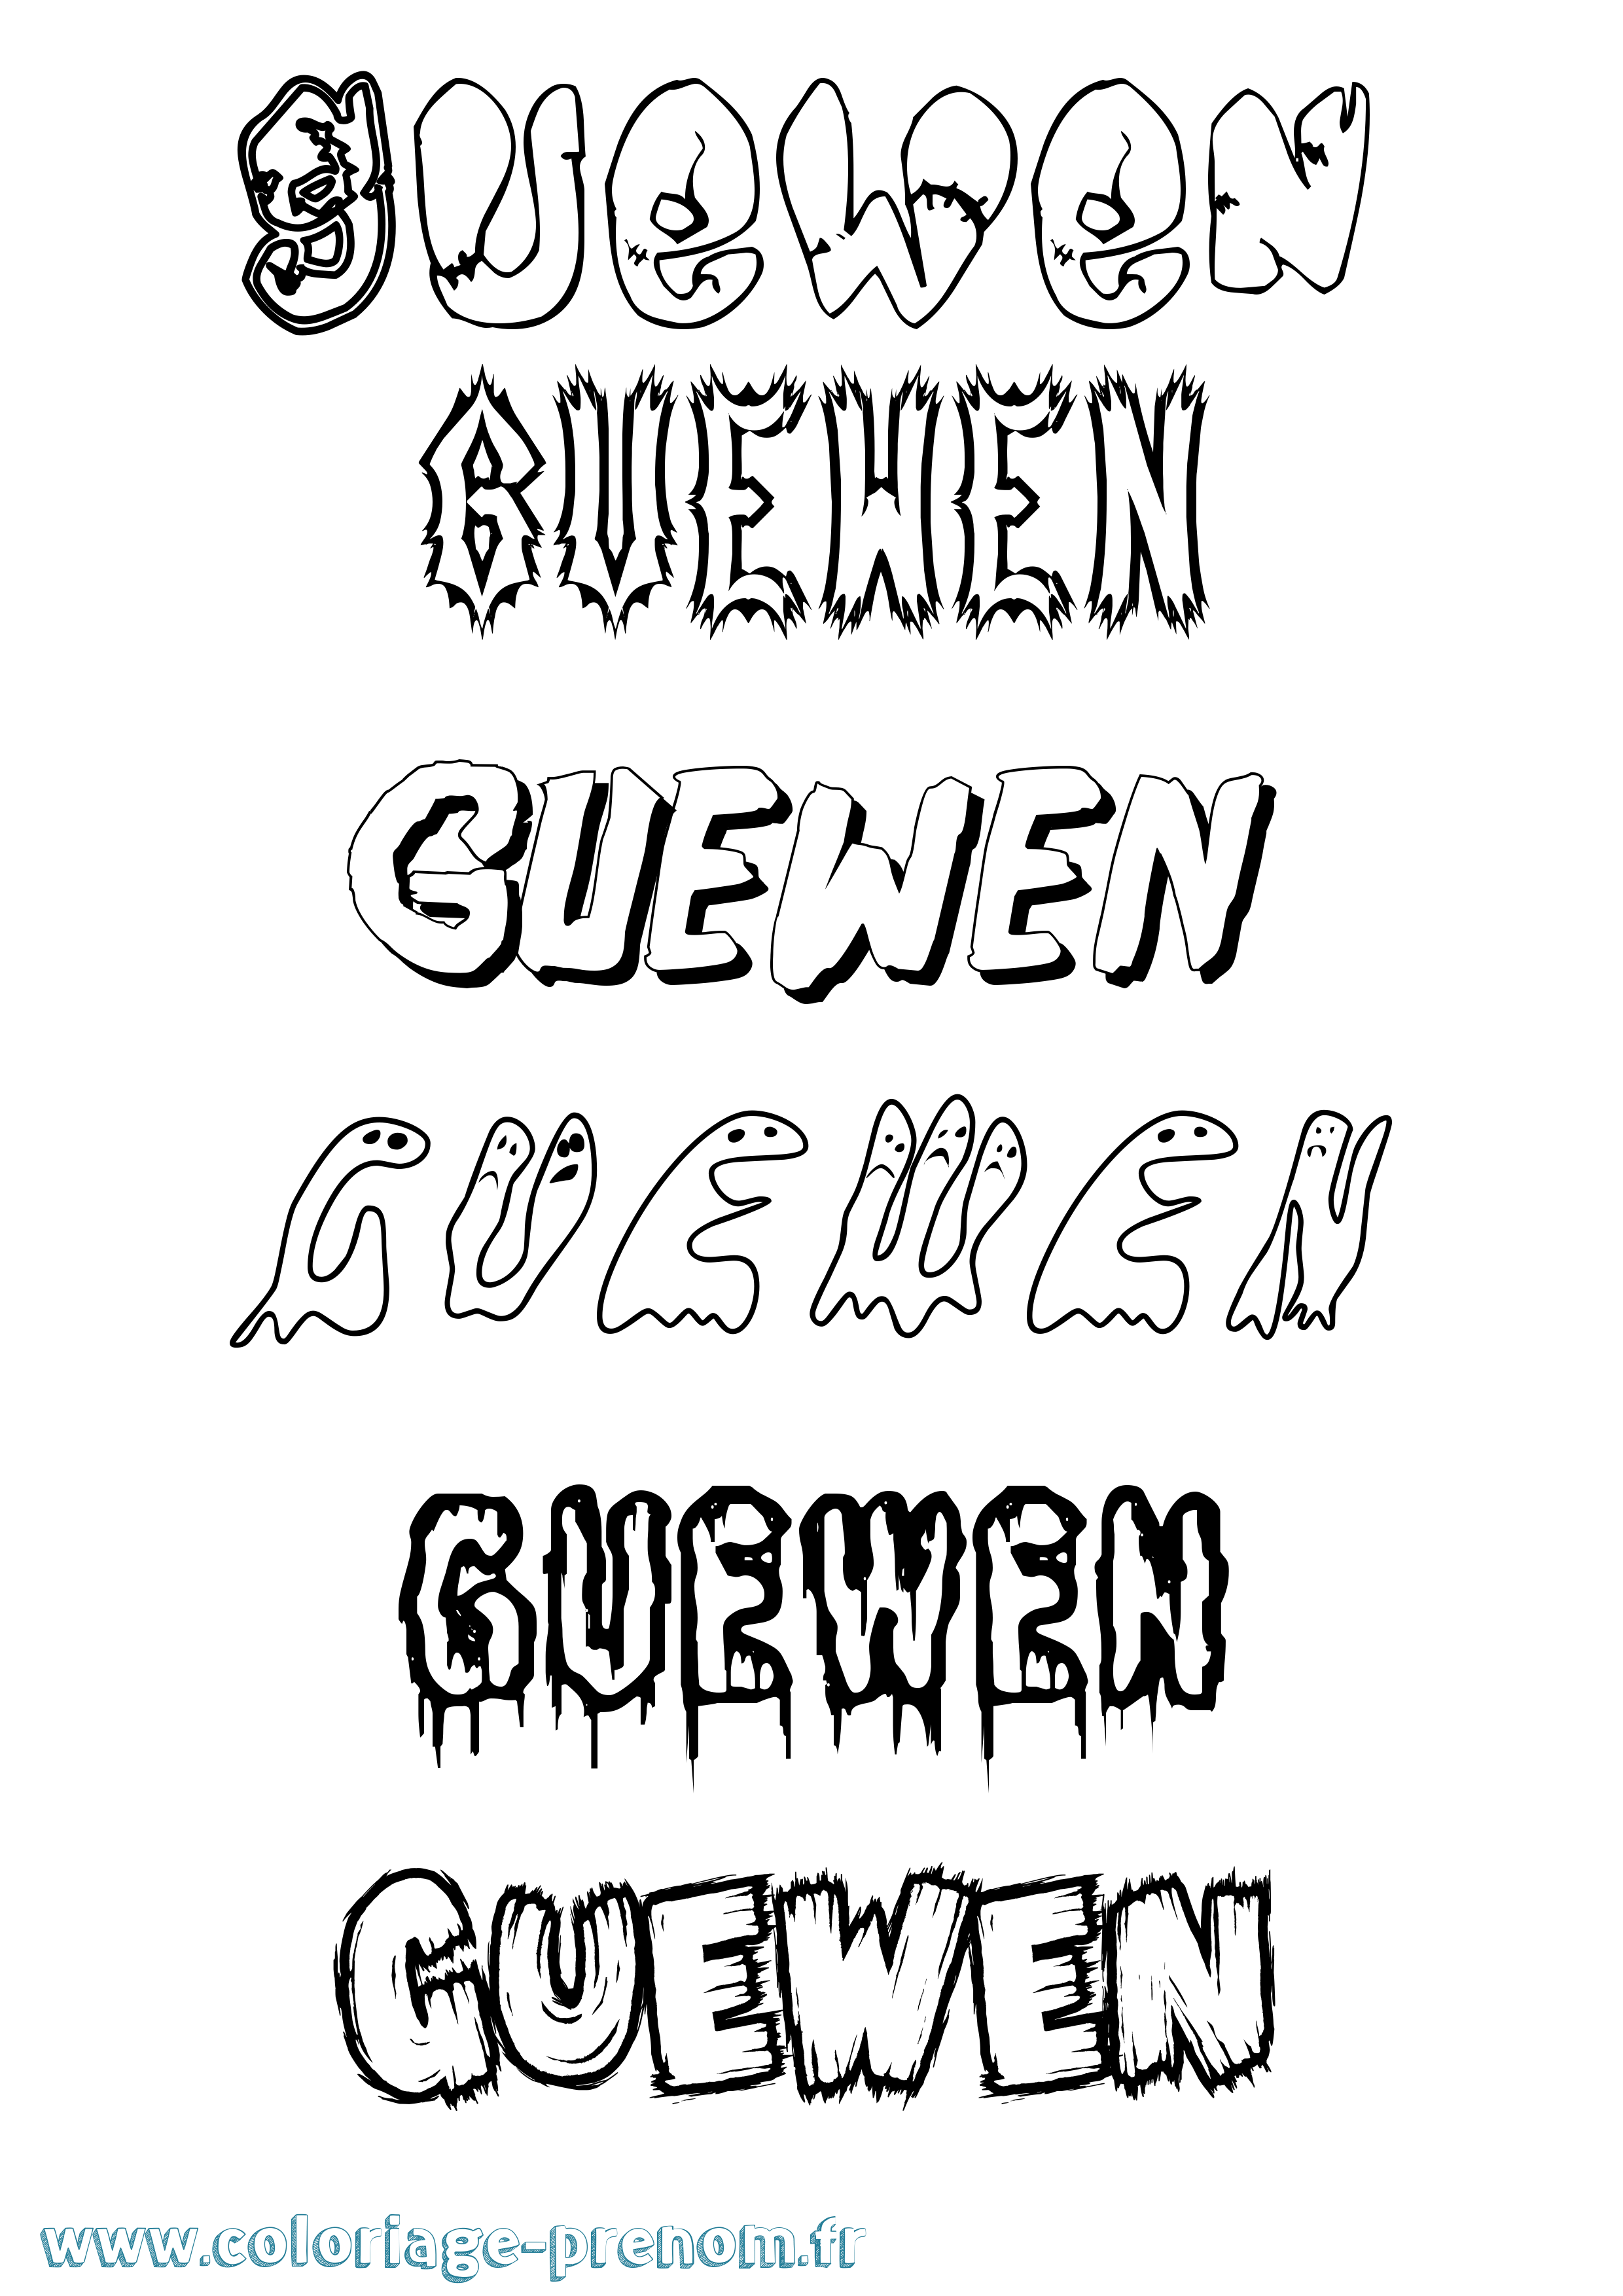 Coloriage prénom Guewen Frisson